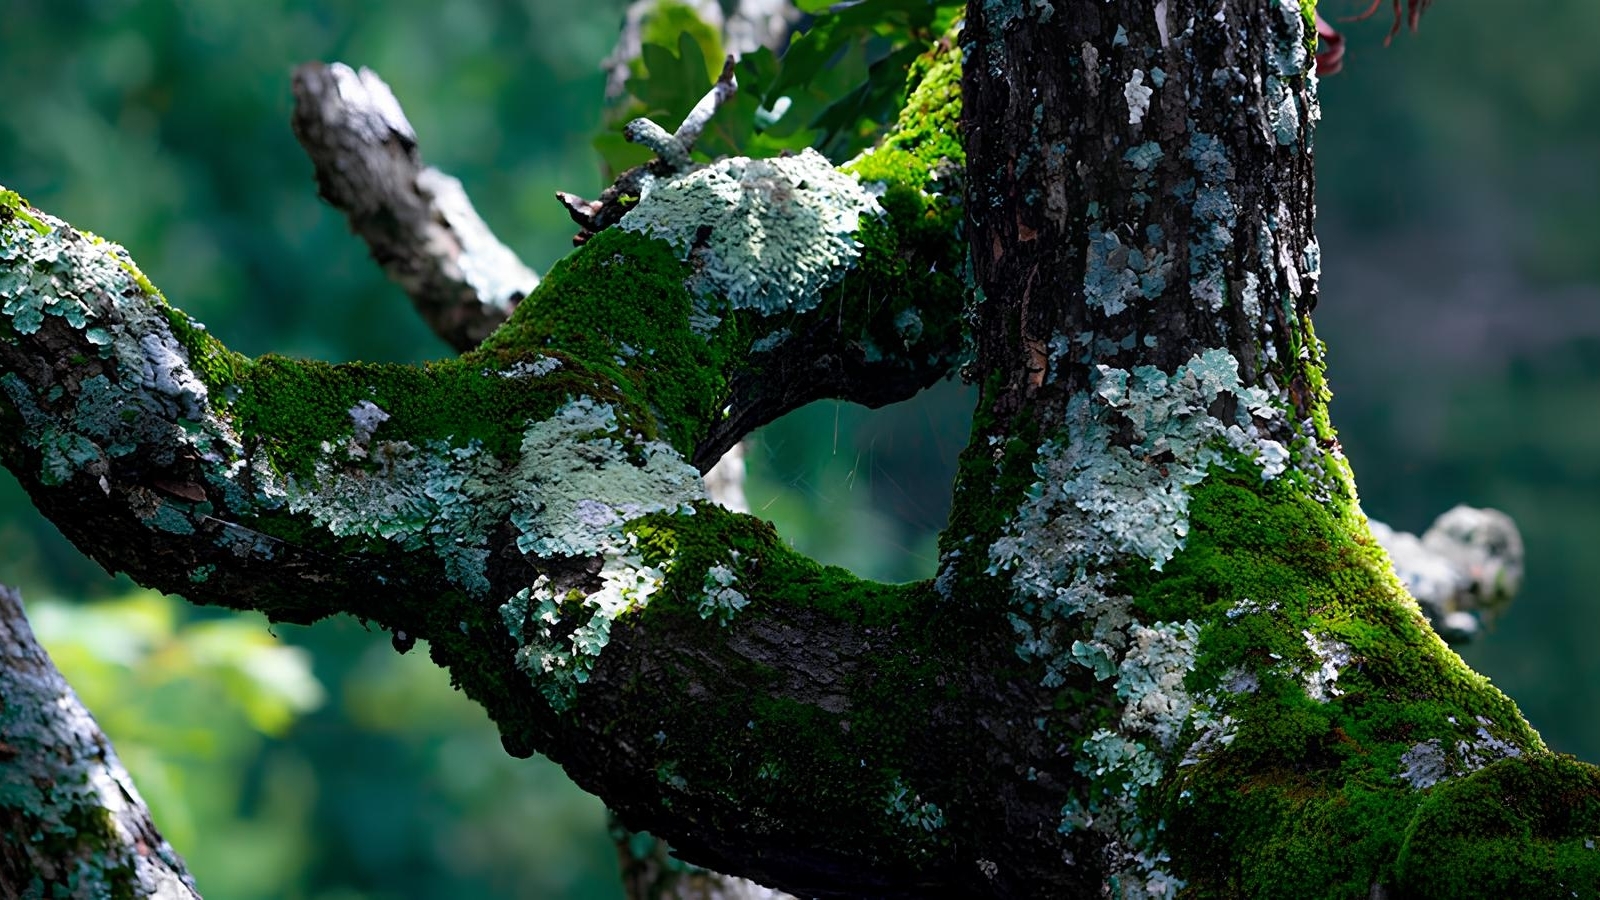 Захистіть свій сад: ефективні методи боротьби з мохом та лишайниками на деревах